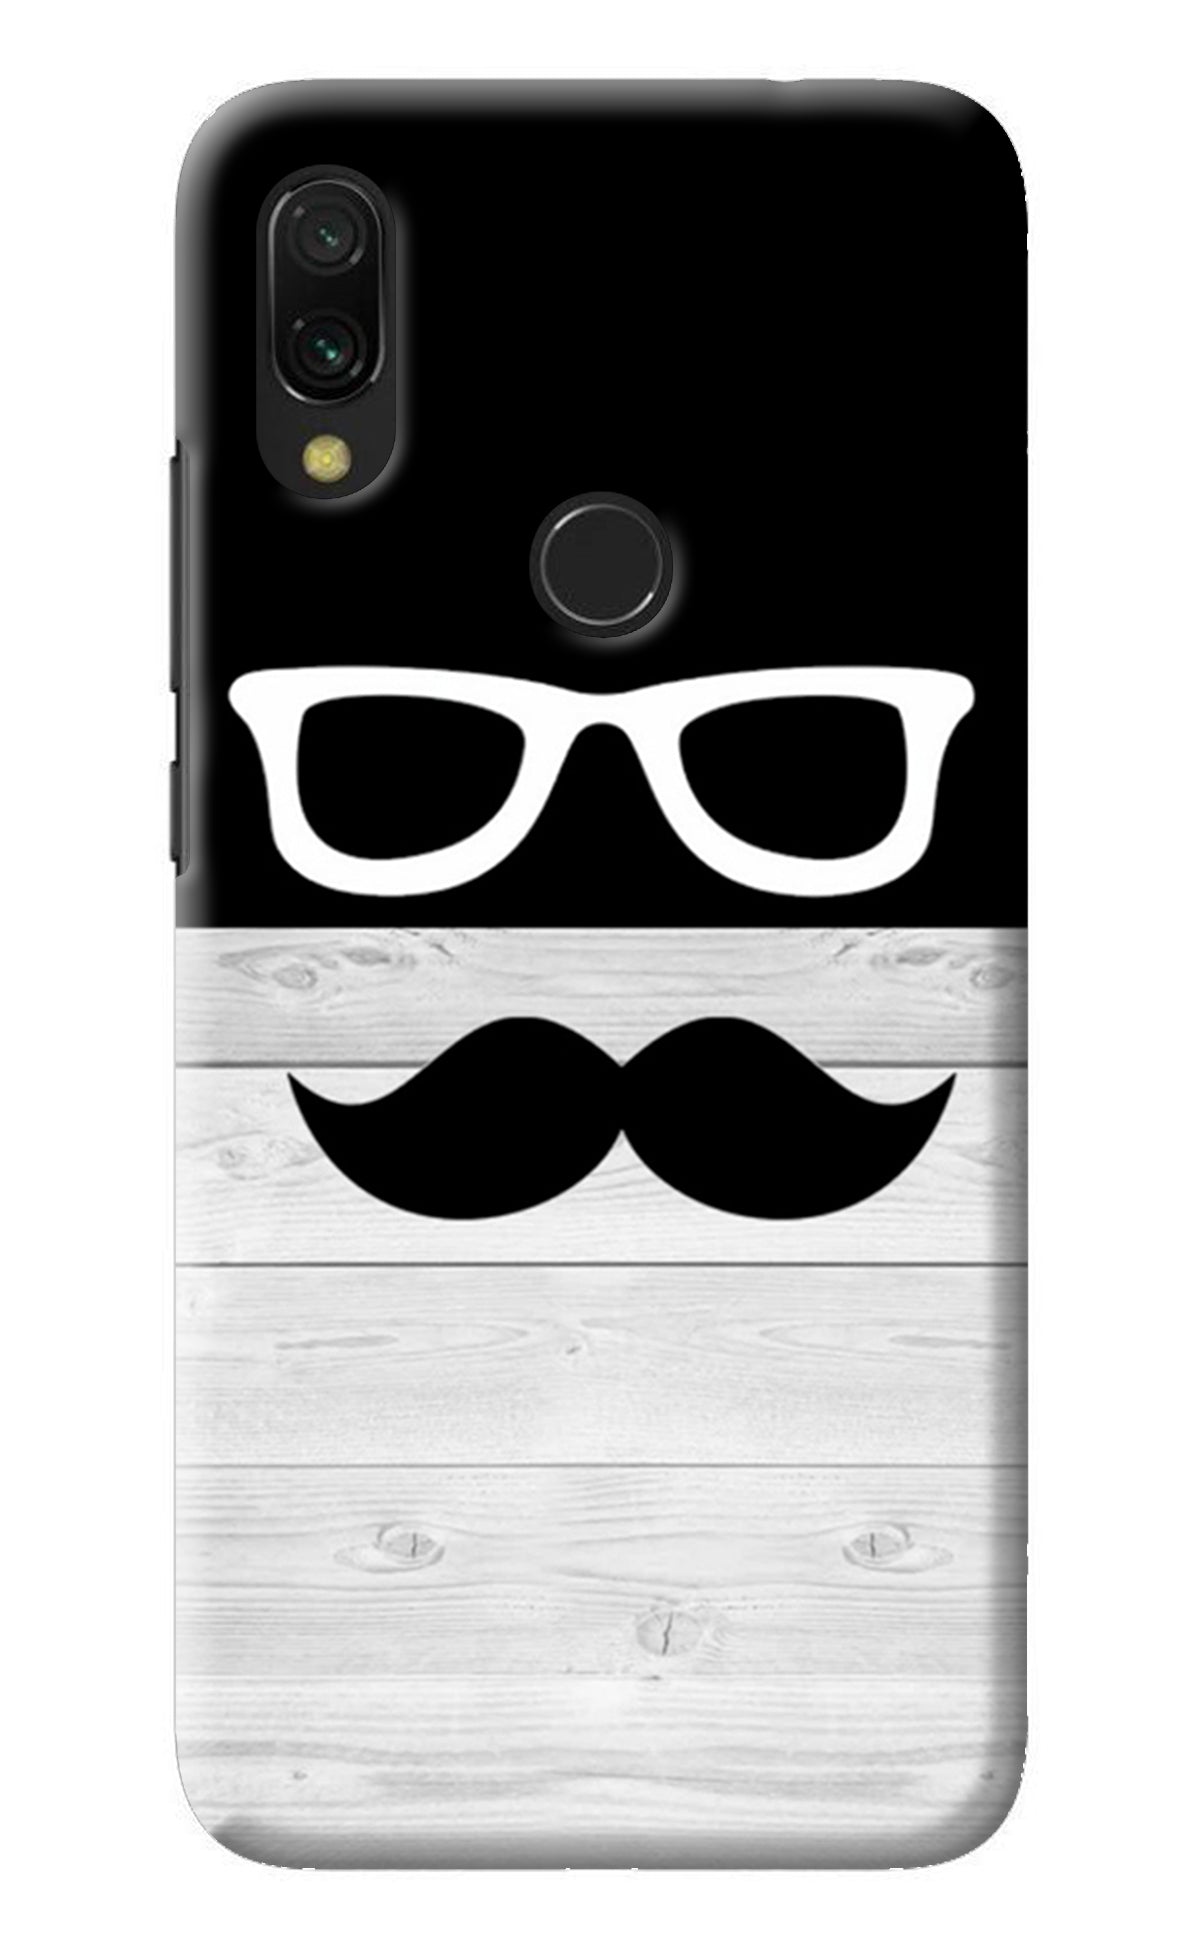 Mustache Redmi Y3 Back Cover